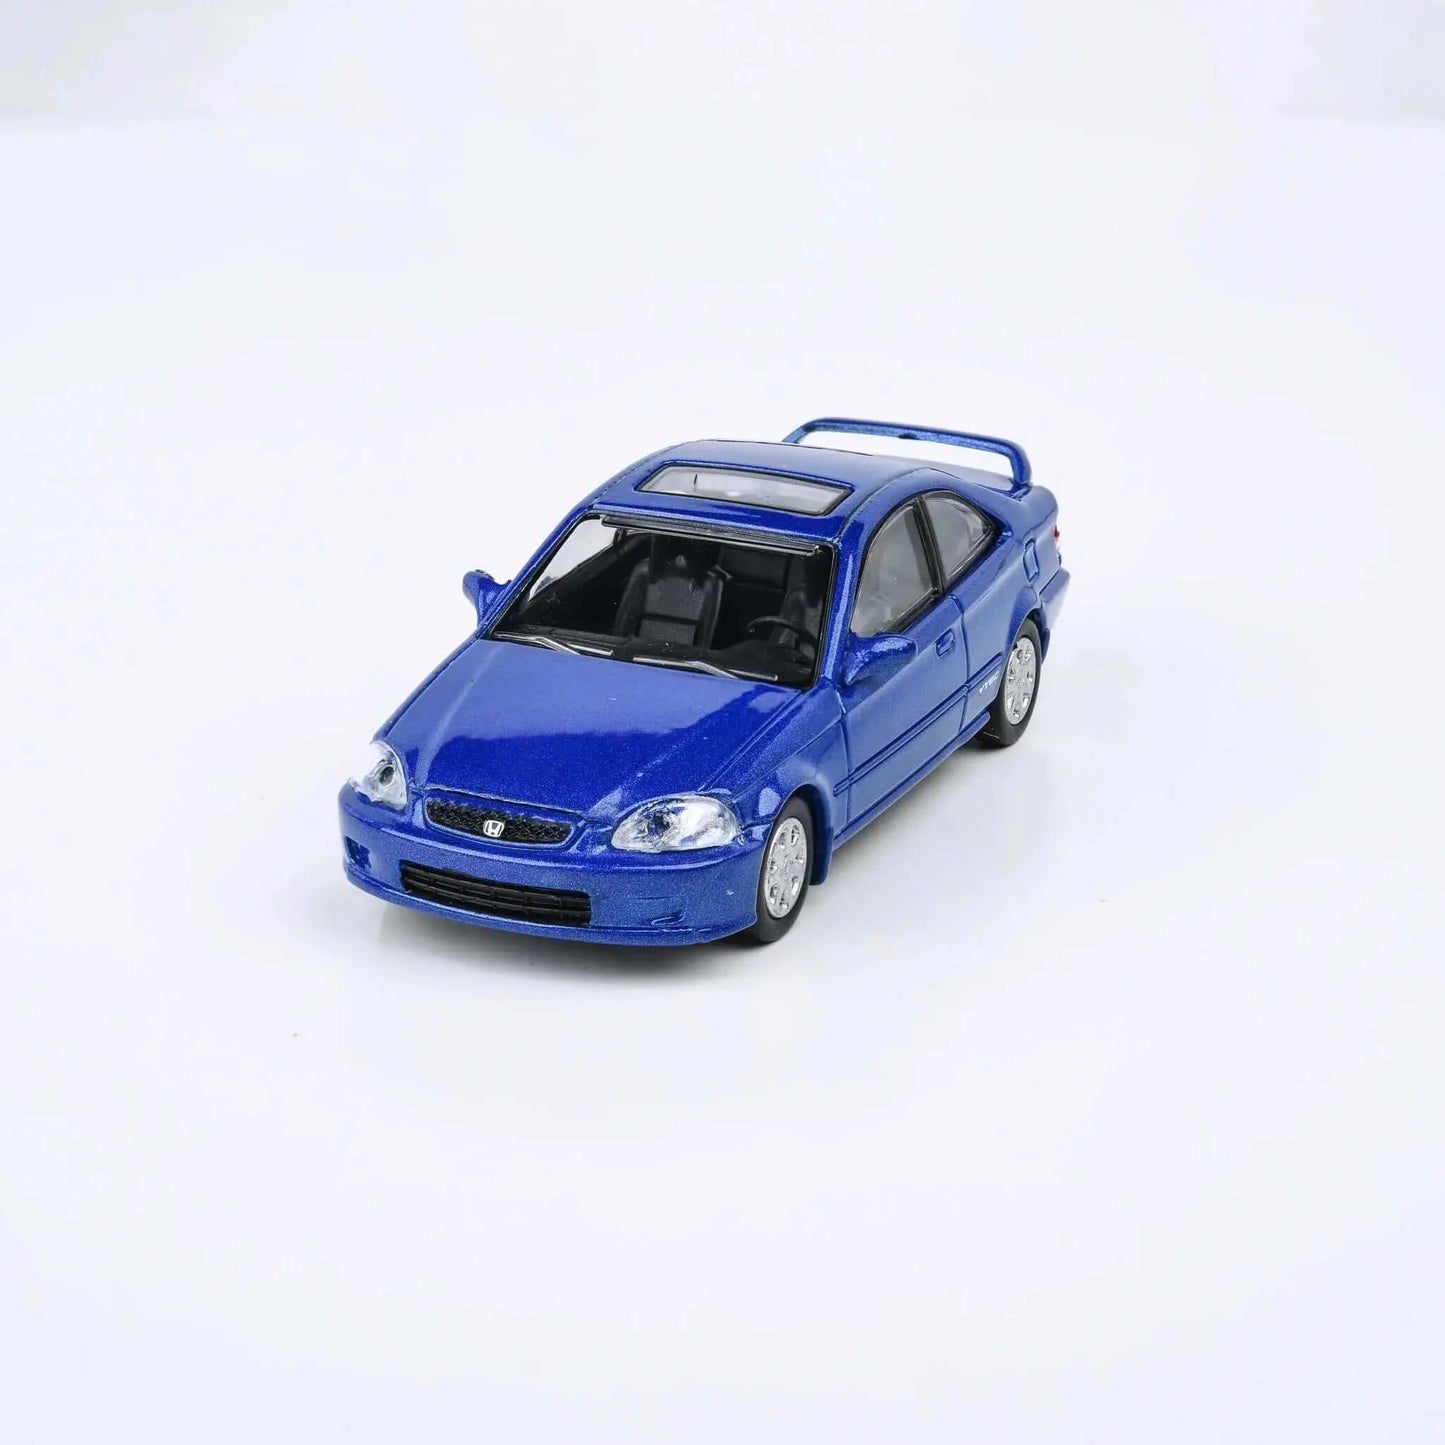 Honda civic Si EM1 1999 blue LHD Para64 1/64 | Motors Miniatures